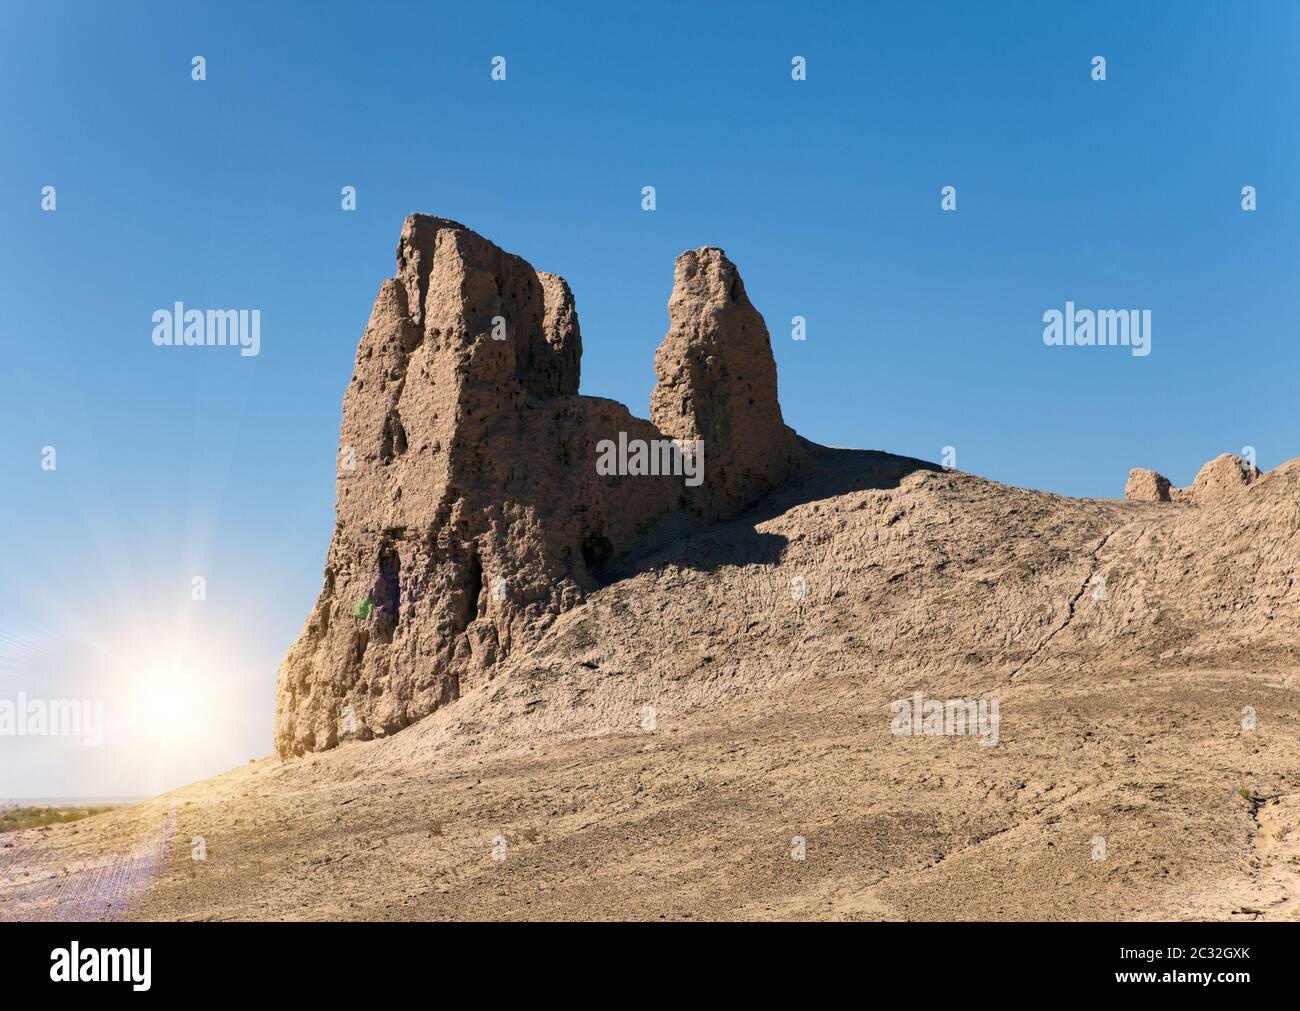 Des squelettes de l'enceinte de l'ancienne forteresse de Khorezm dans le désert. L'Ouzbékistan Banque D'Images